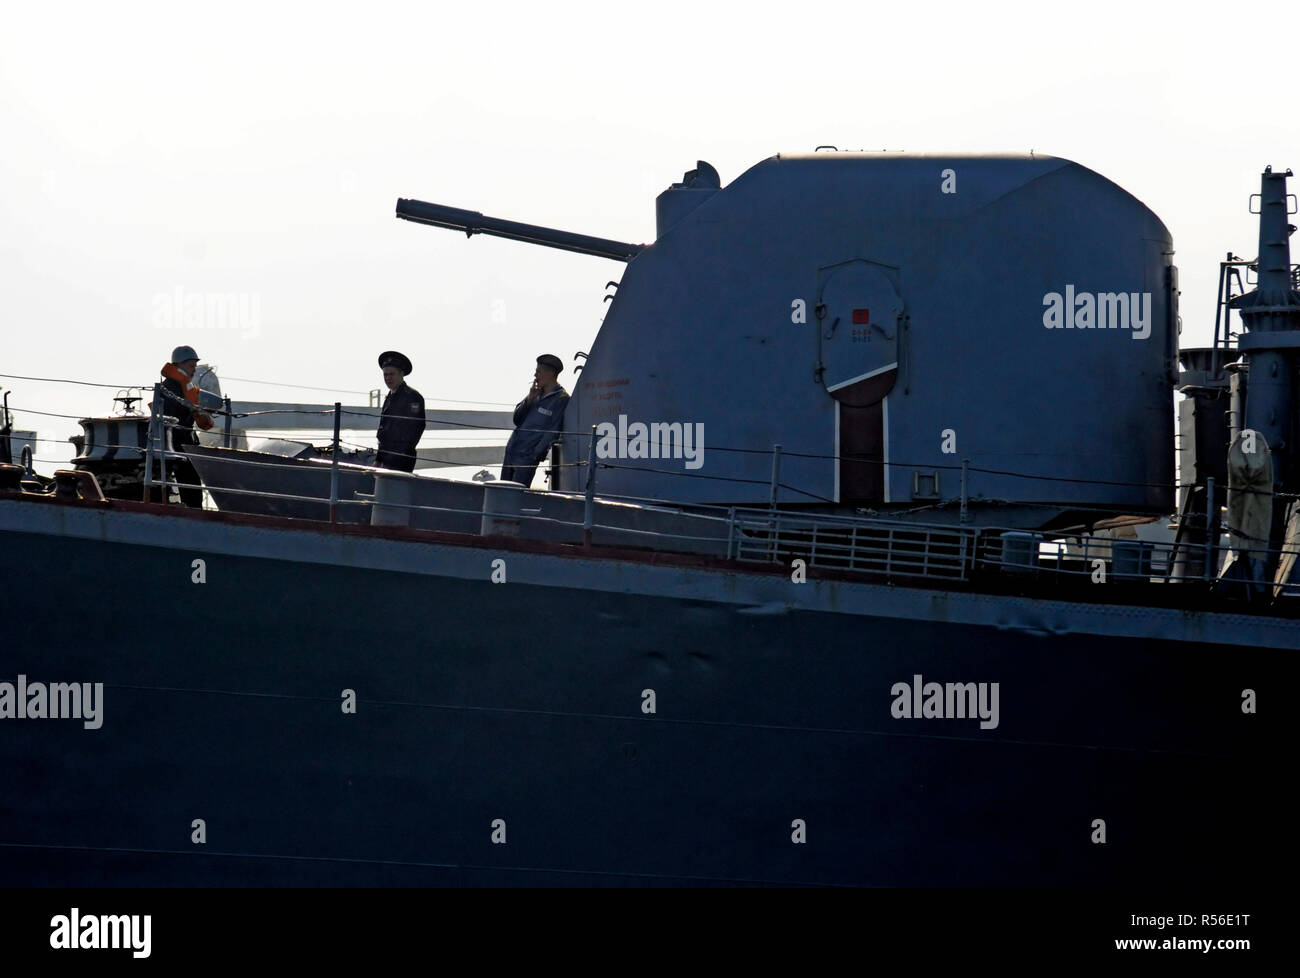 November 2008, Sewastopol, Krim: ein Russisches Kriegsschiff aus dem Schwarzen Meer Flotte im Hafen von Sewastopol. Navires de guerre Russes dans le Port de Sebastopol de Crimée. *** Frankreich/KEINE VERKÄUFE IN DEN FRANZÖSISCHEN MEDIEN *** Stockfoto